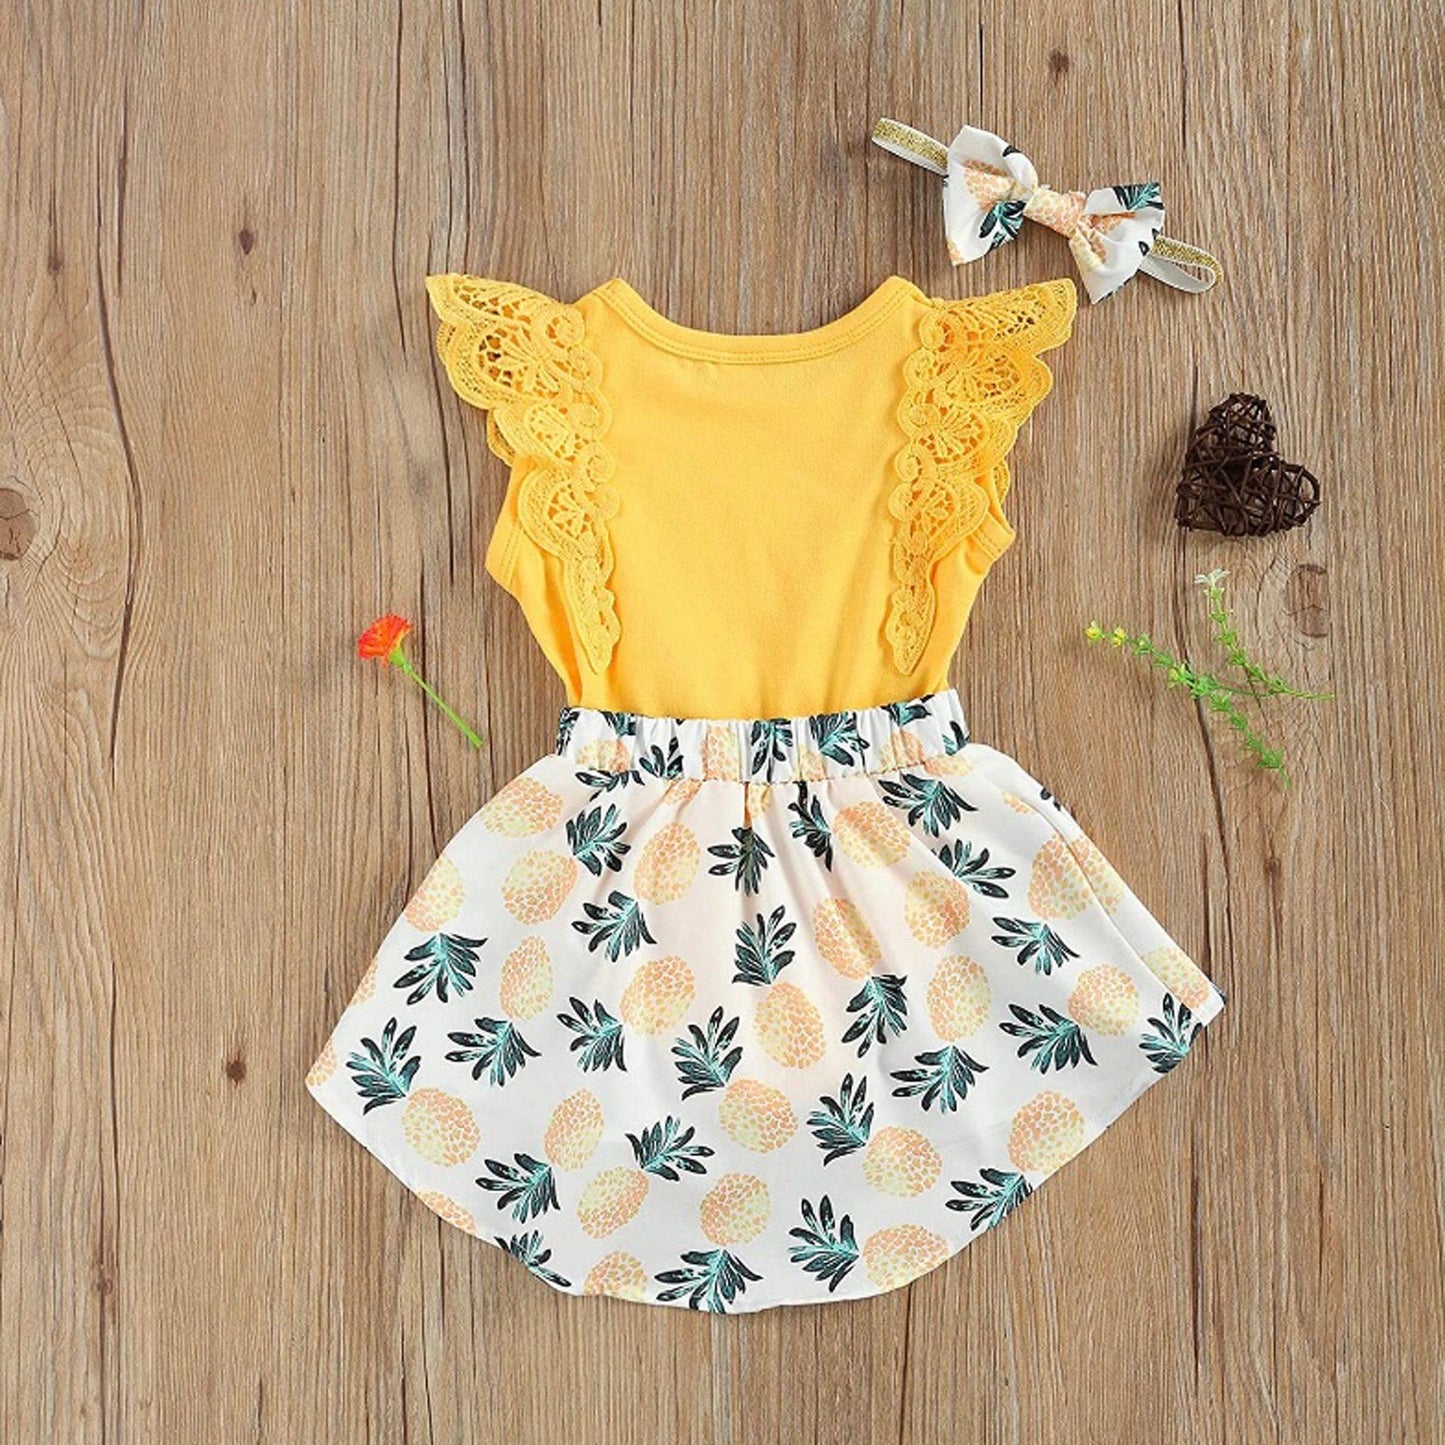 Baby Girl Summer Pineapple Dress